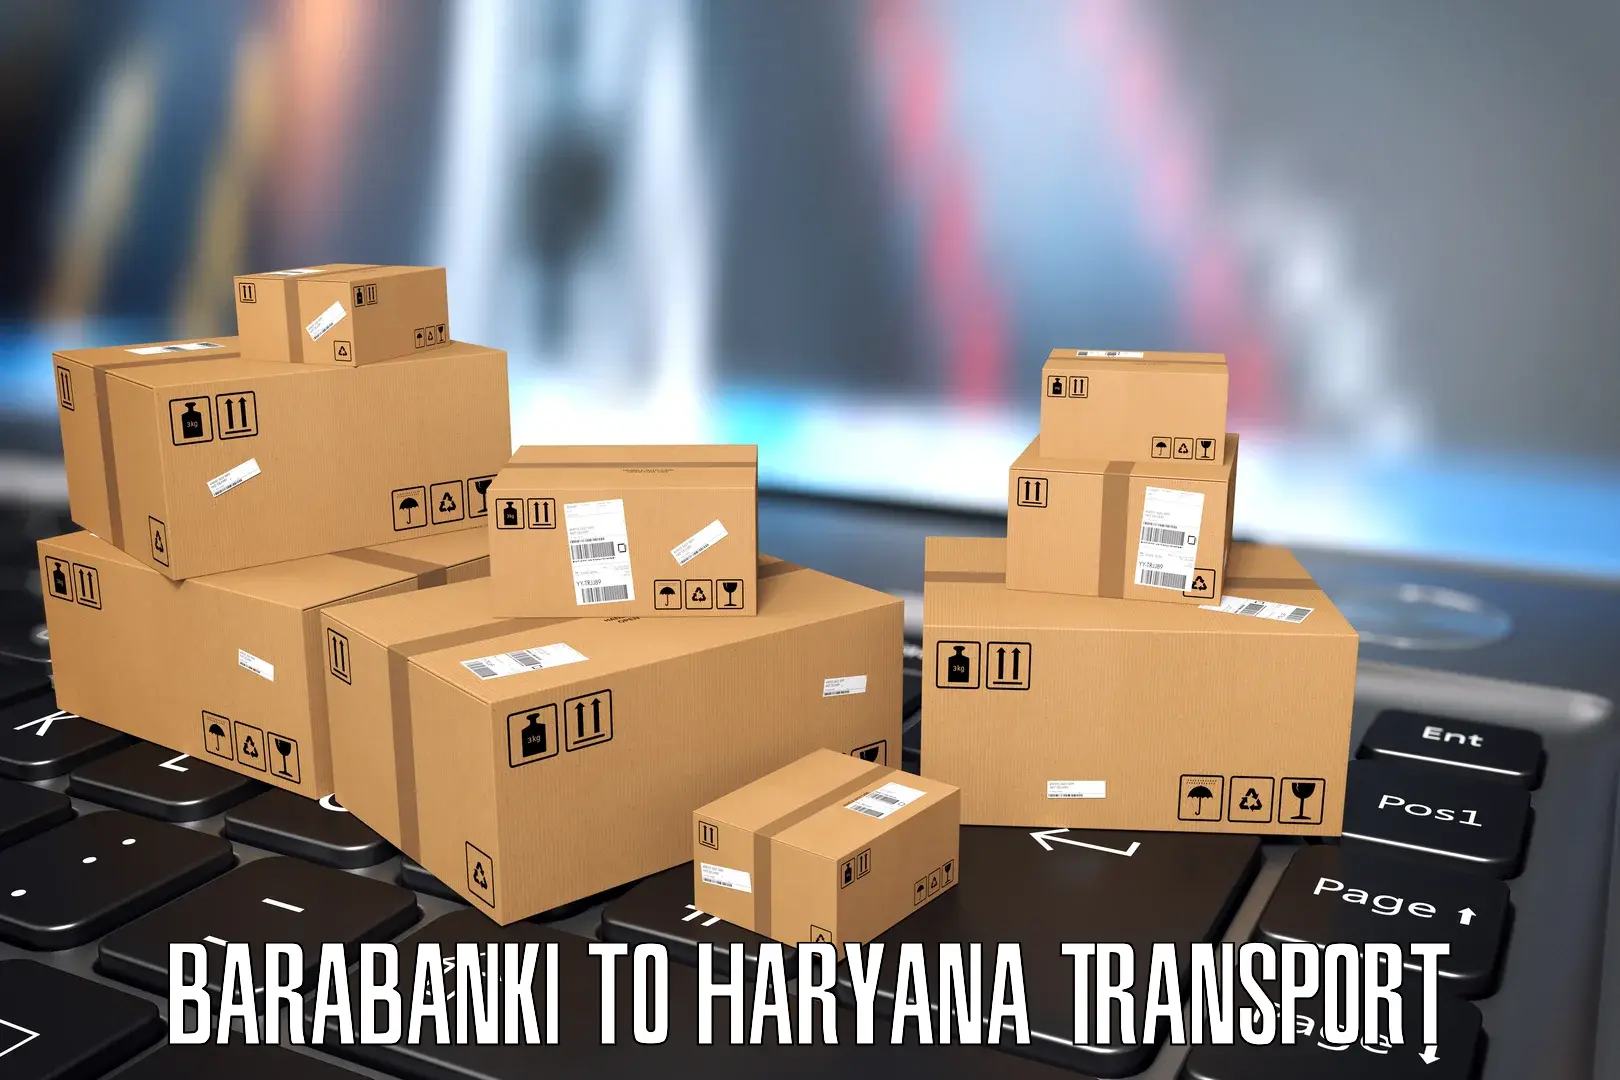 Nationwide transport services Barabanki to Bhiwani